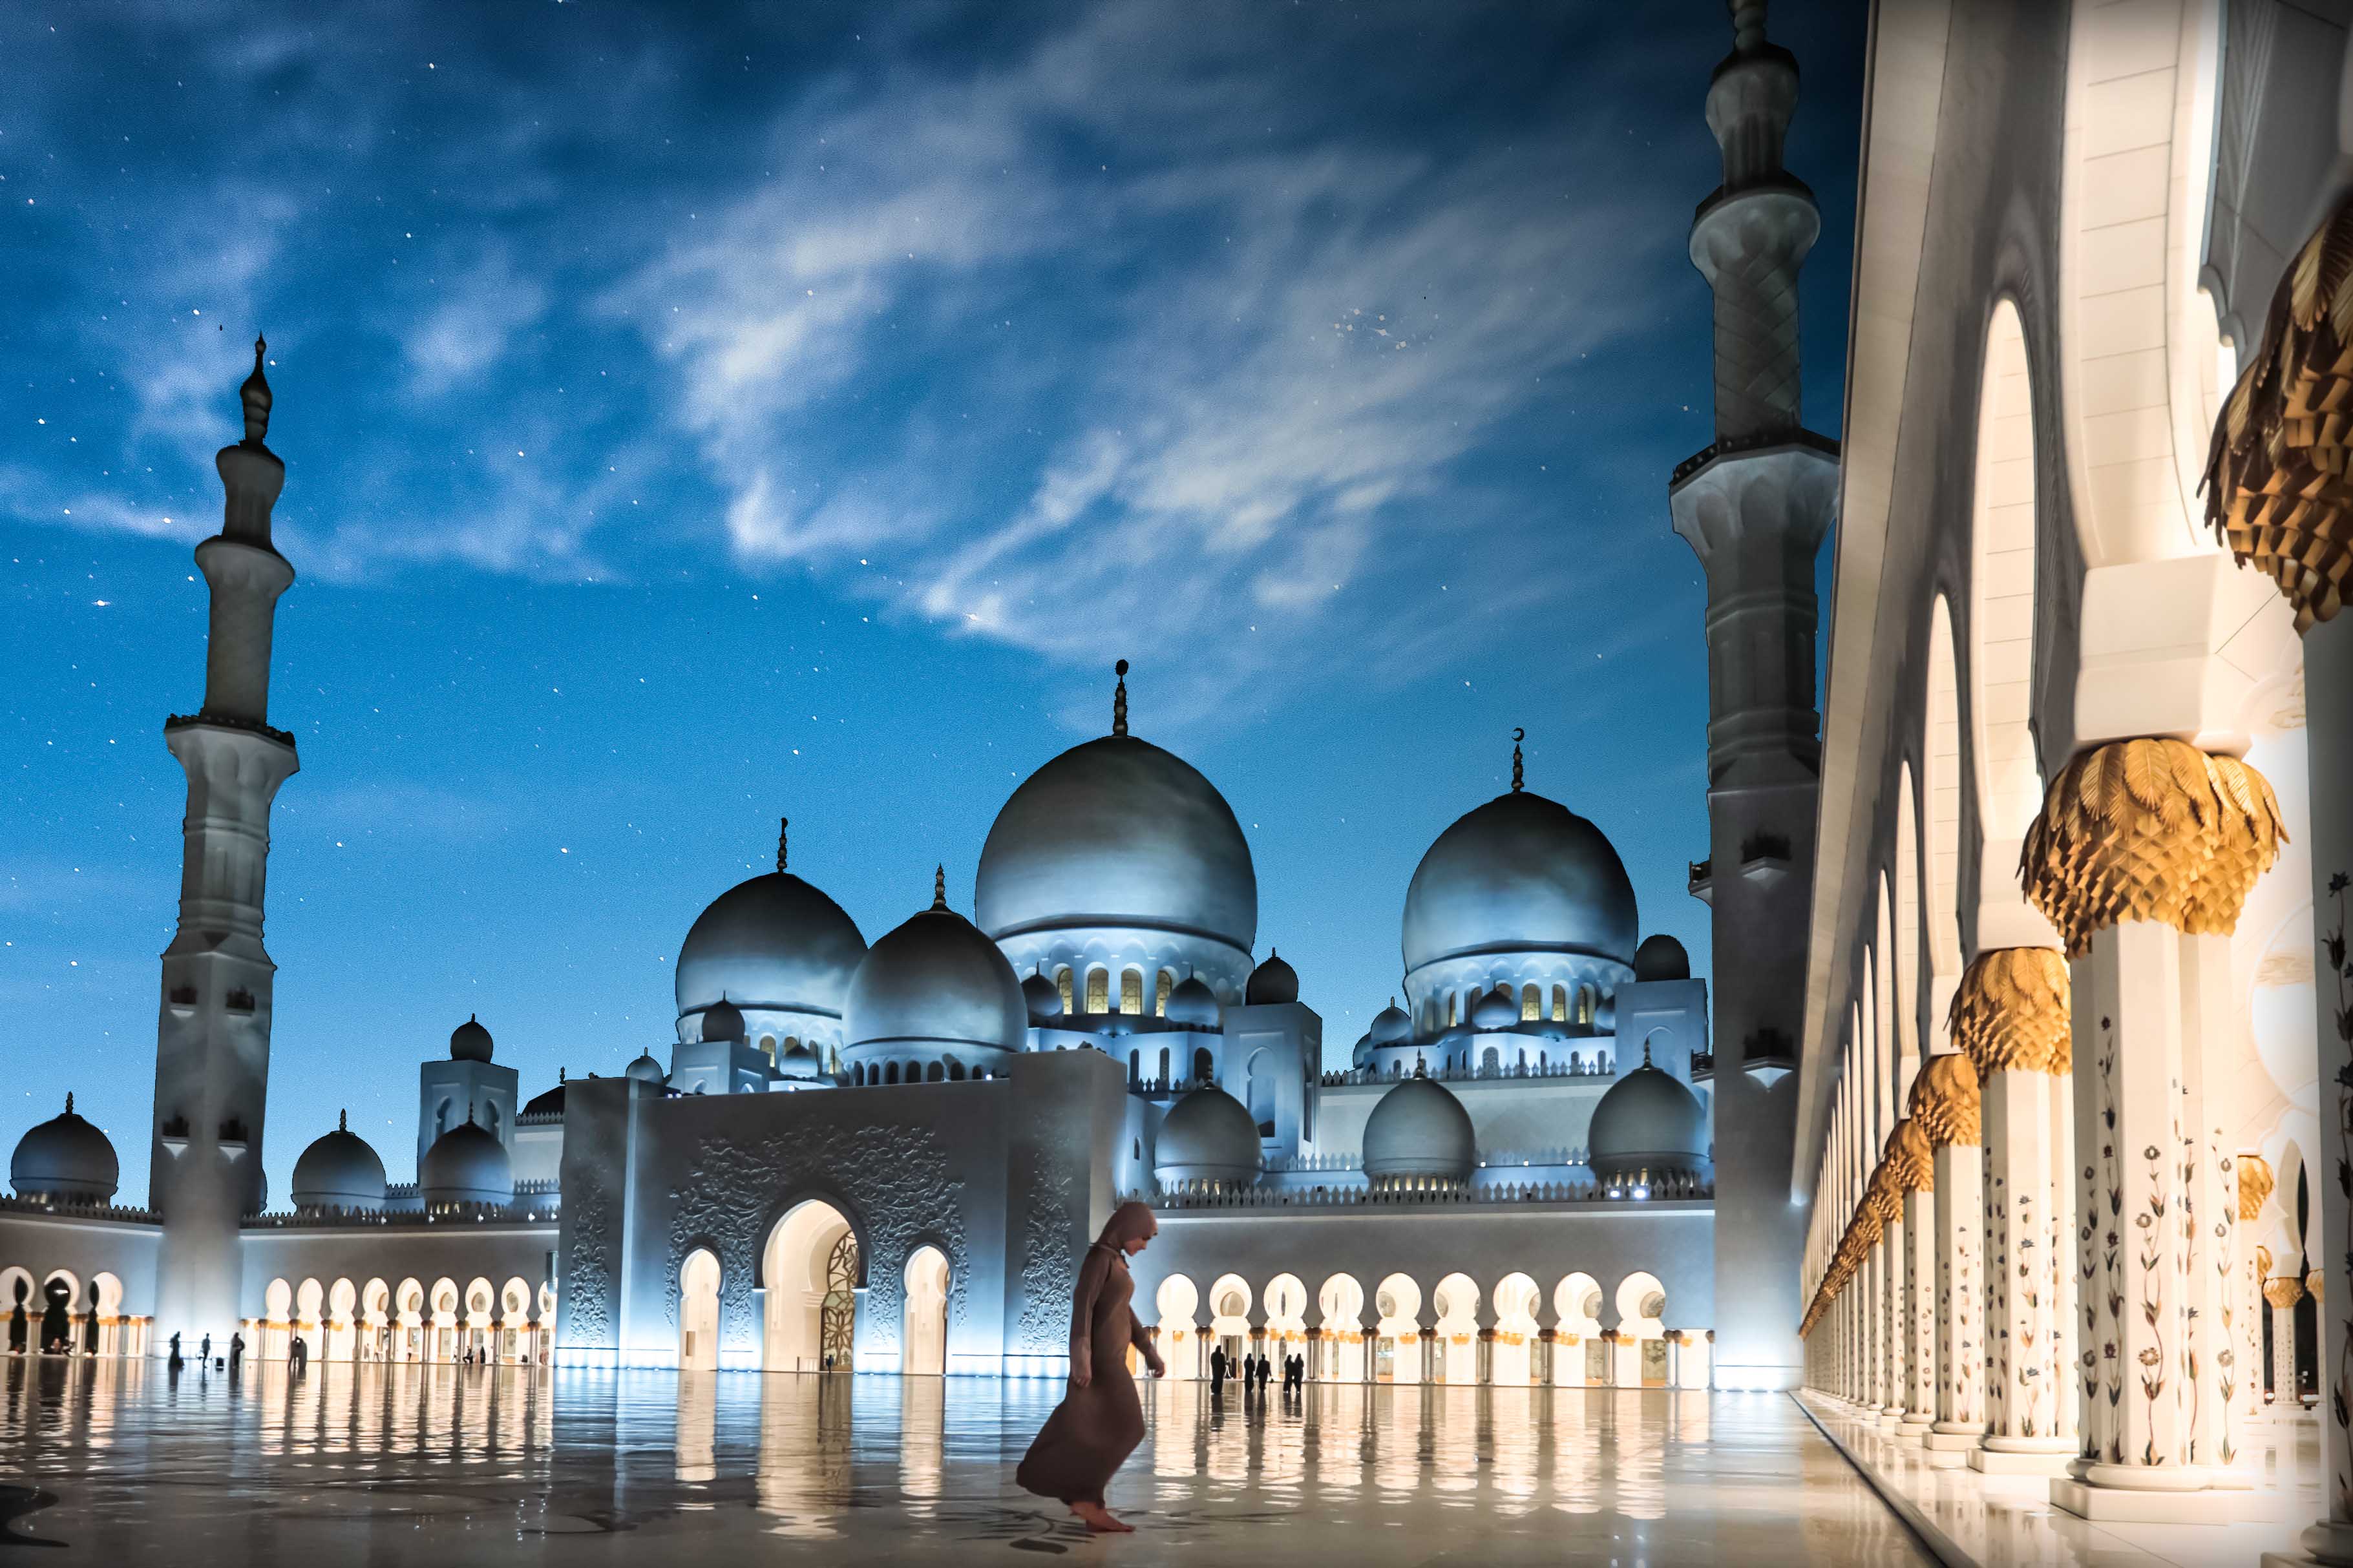 מסגד שייח זאייד הגדול (Sheikh Zayed Grand Mosque)